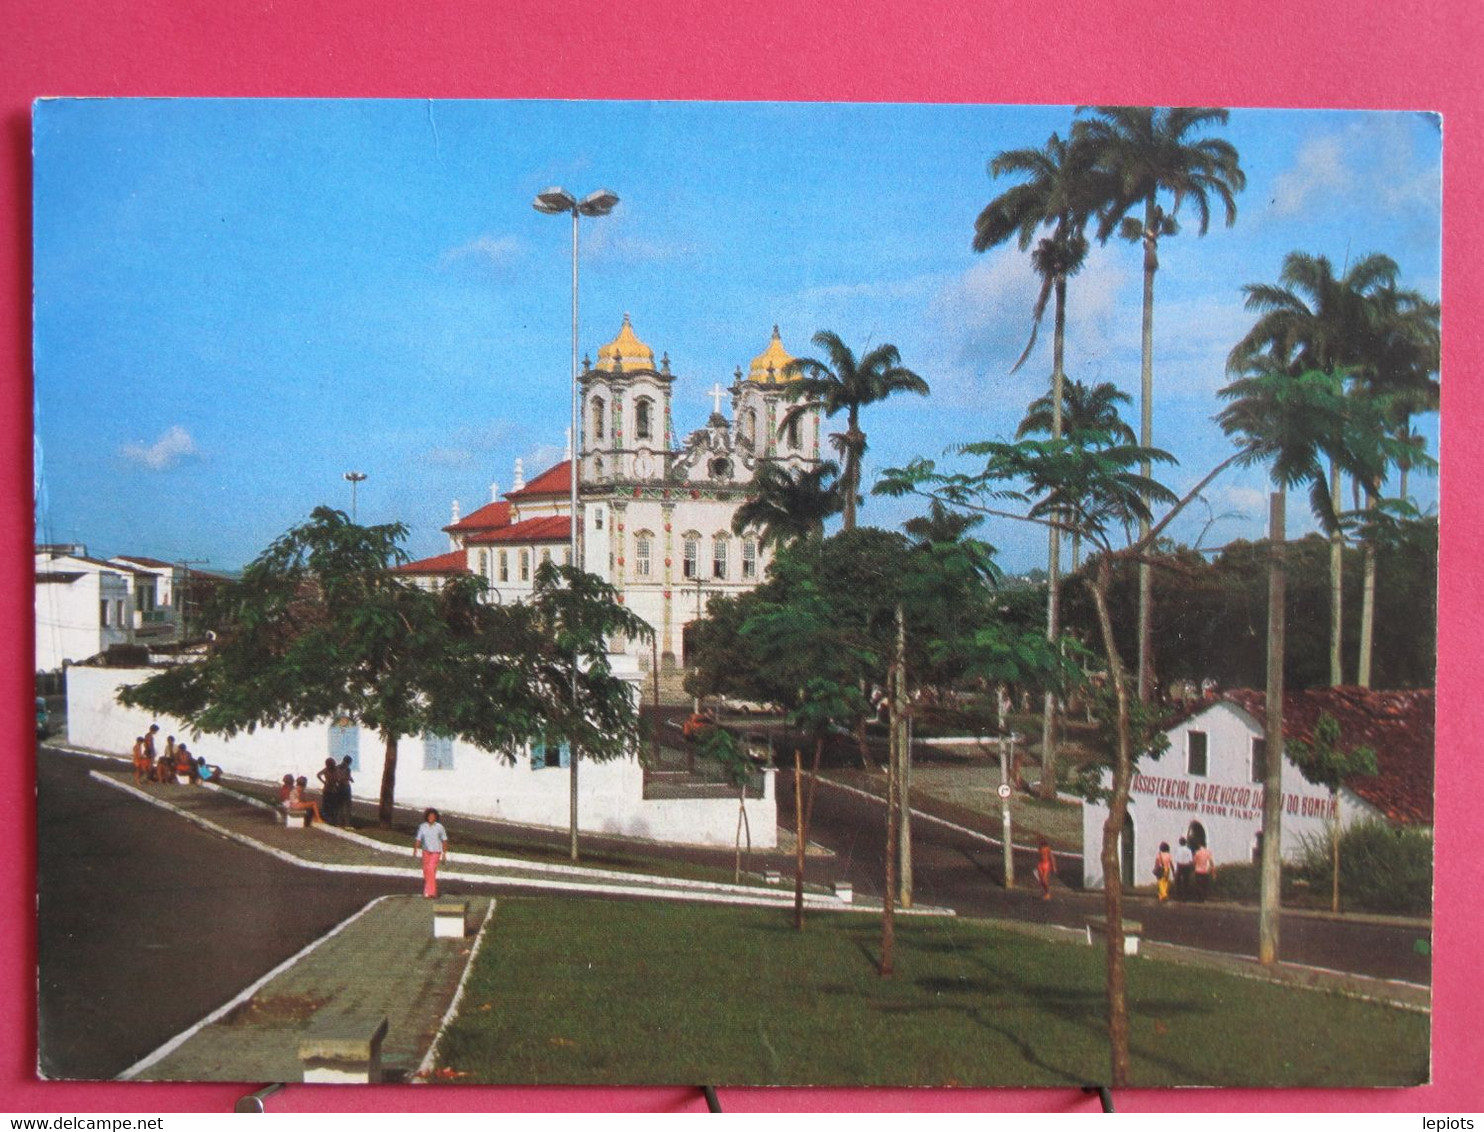 Visuel Pas Très Courant - Brésil - Salvador De Bahia - Igreja N. Senhor Do Bonfim - R/verso - Salvador De Bahia